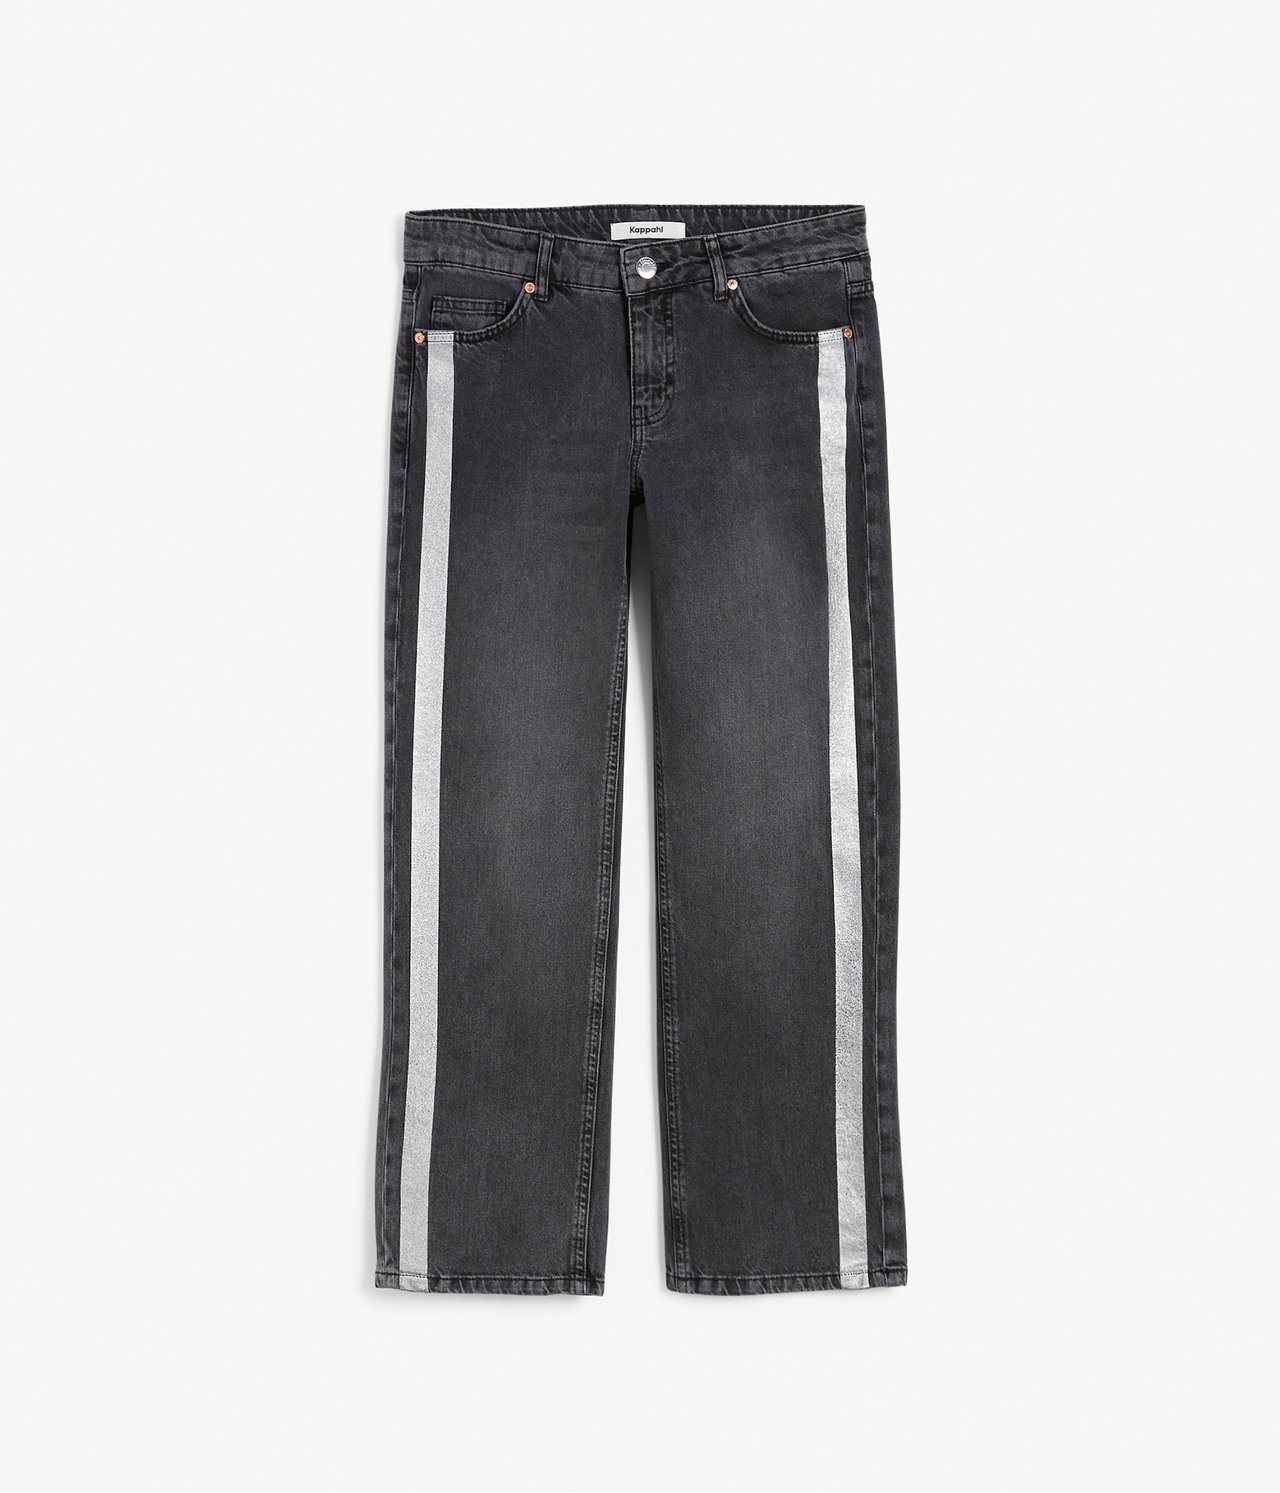 Kort jeans med striper - Svart - 7